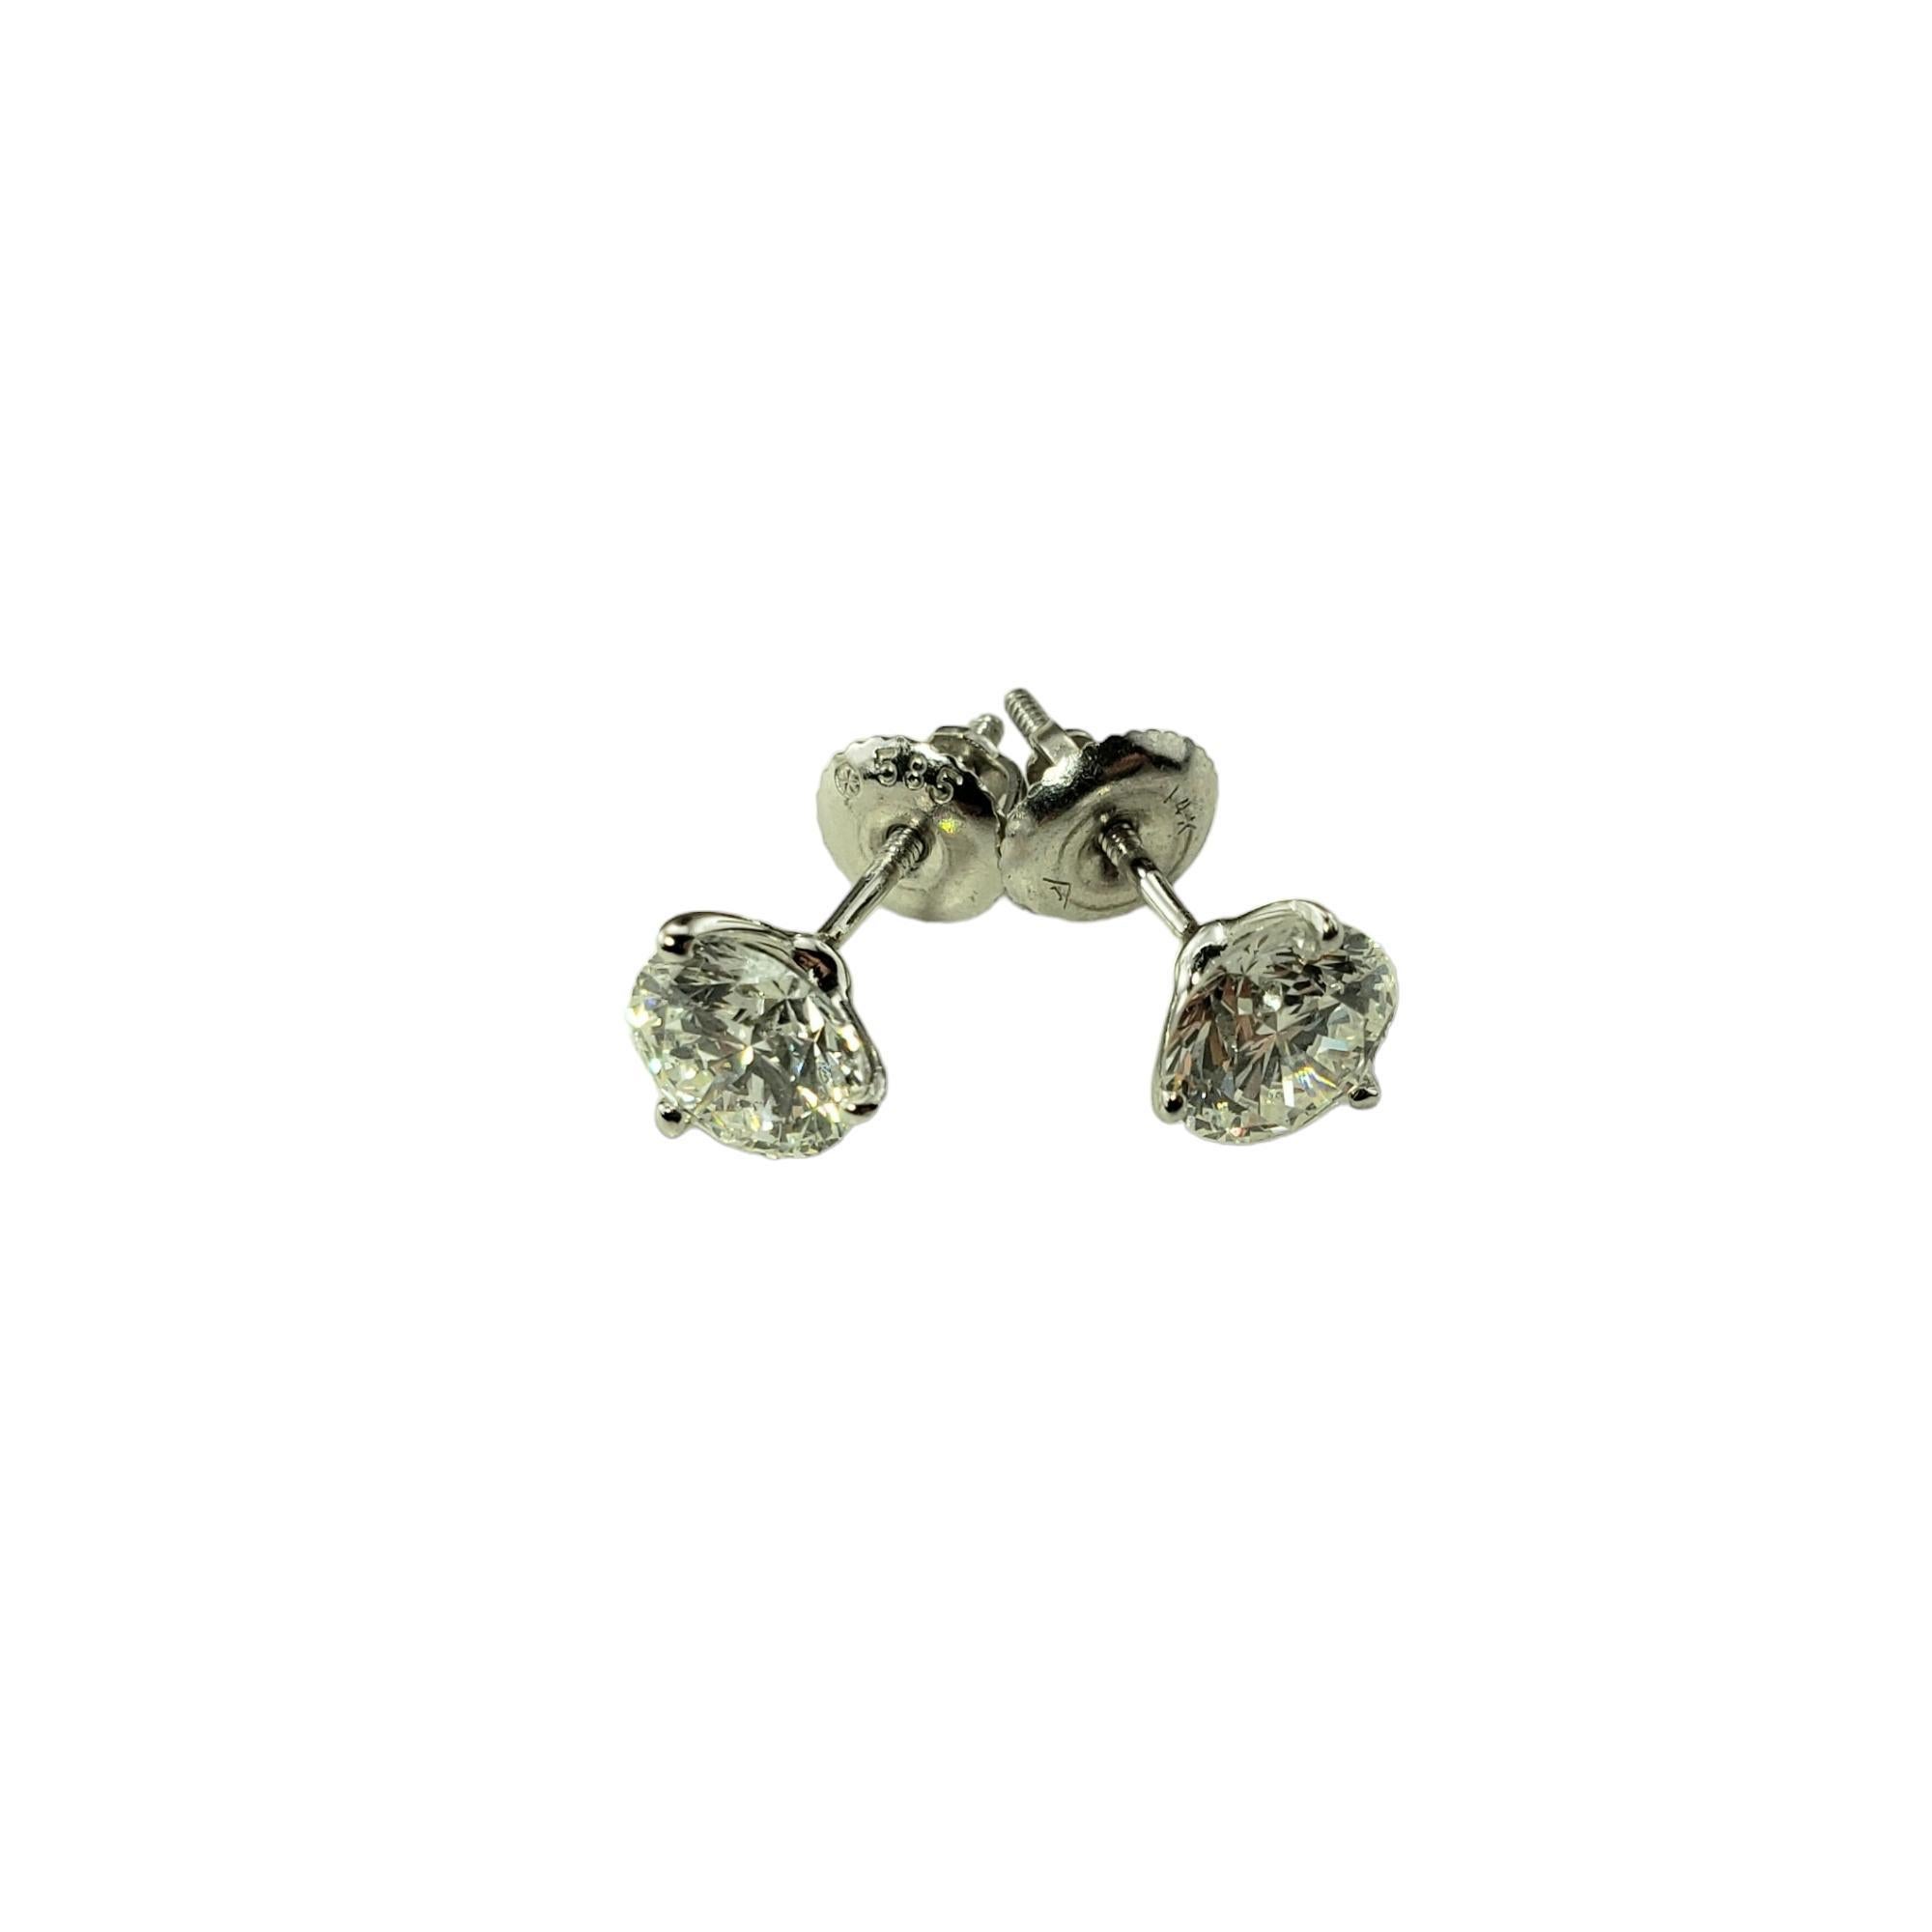 Vintage 14 Karat Weißgold Diamant-Ohrstecker JAGi zertifiziert-

Diese funkelnden Ohrstecker sind mit je einem runden Diamanten im Brillantschliff in klassischem 14-karätigem Weißgold gefasst.  Schraubverschlüsse hinten. 

Gesamtgewicht der